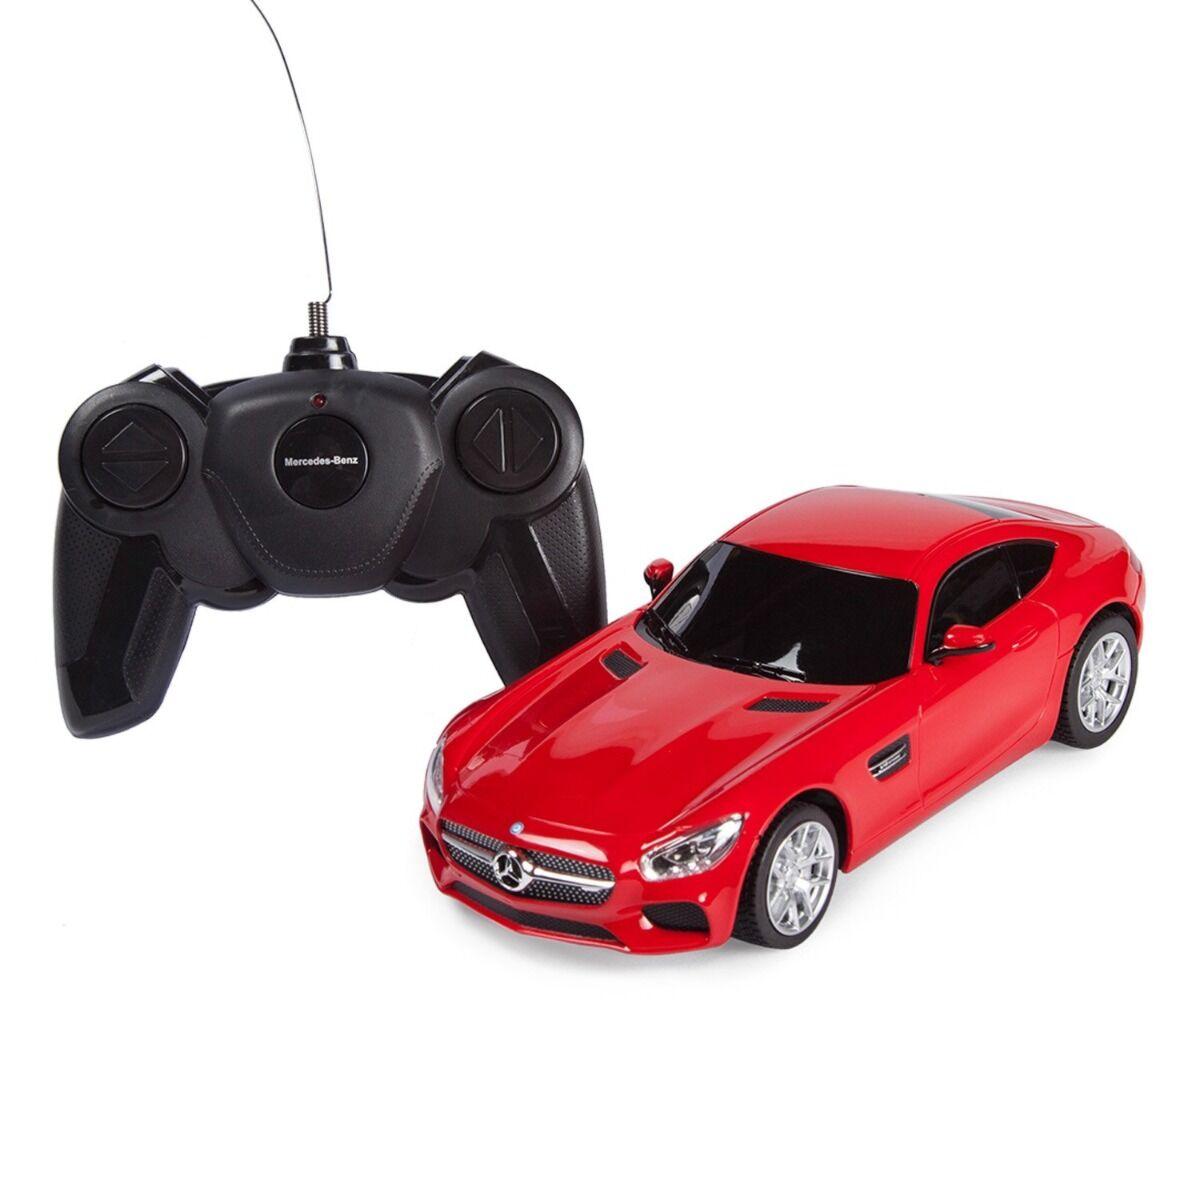 Rastar:  Радиоуправляемая машинка Mercedes-AMG GT на пульте управления, красный, 1:24